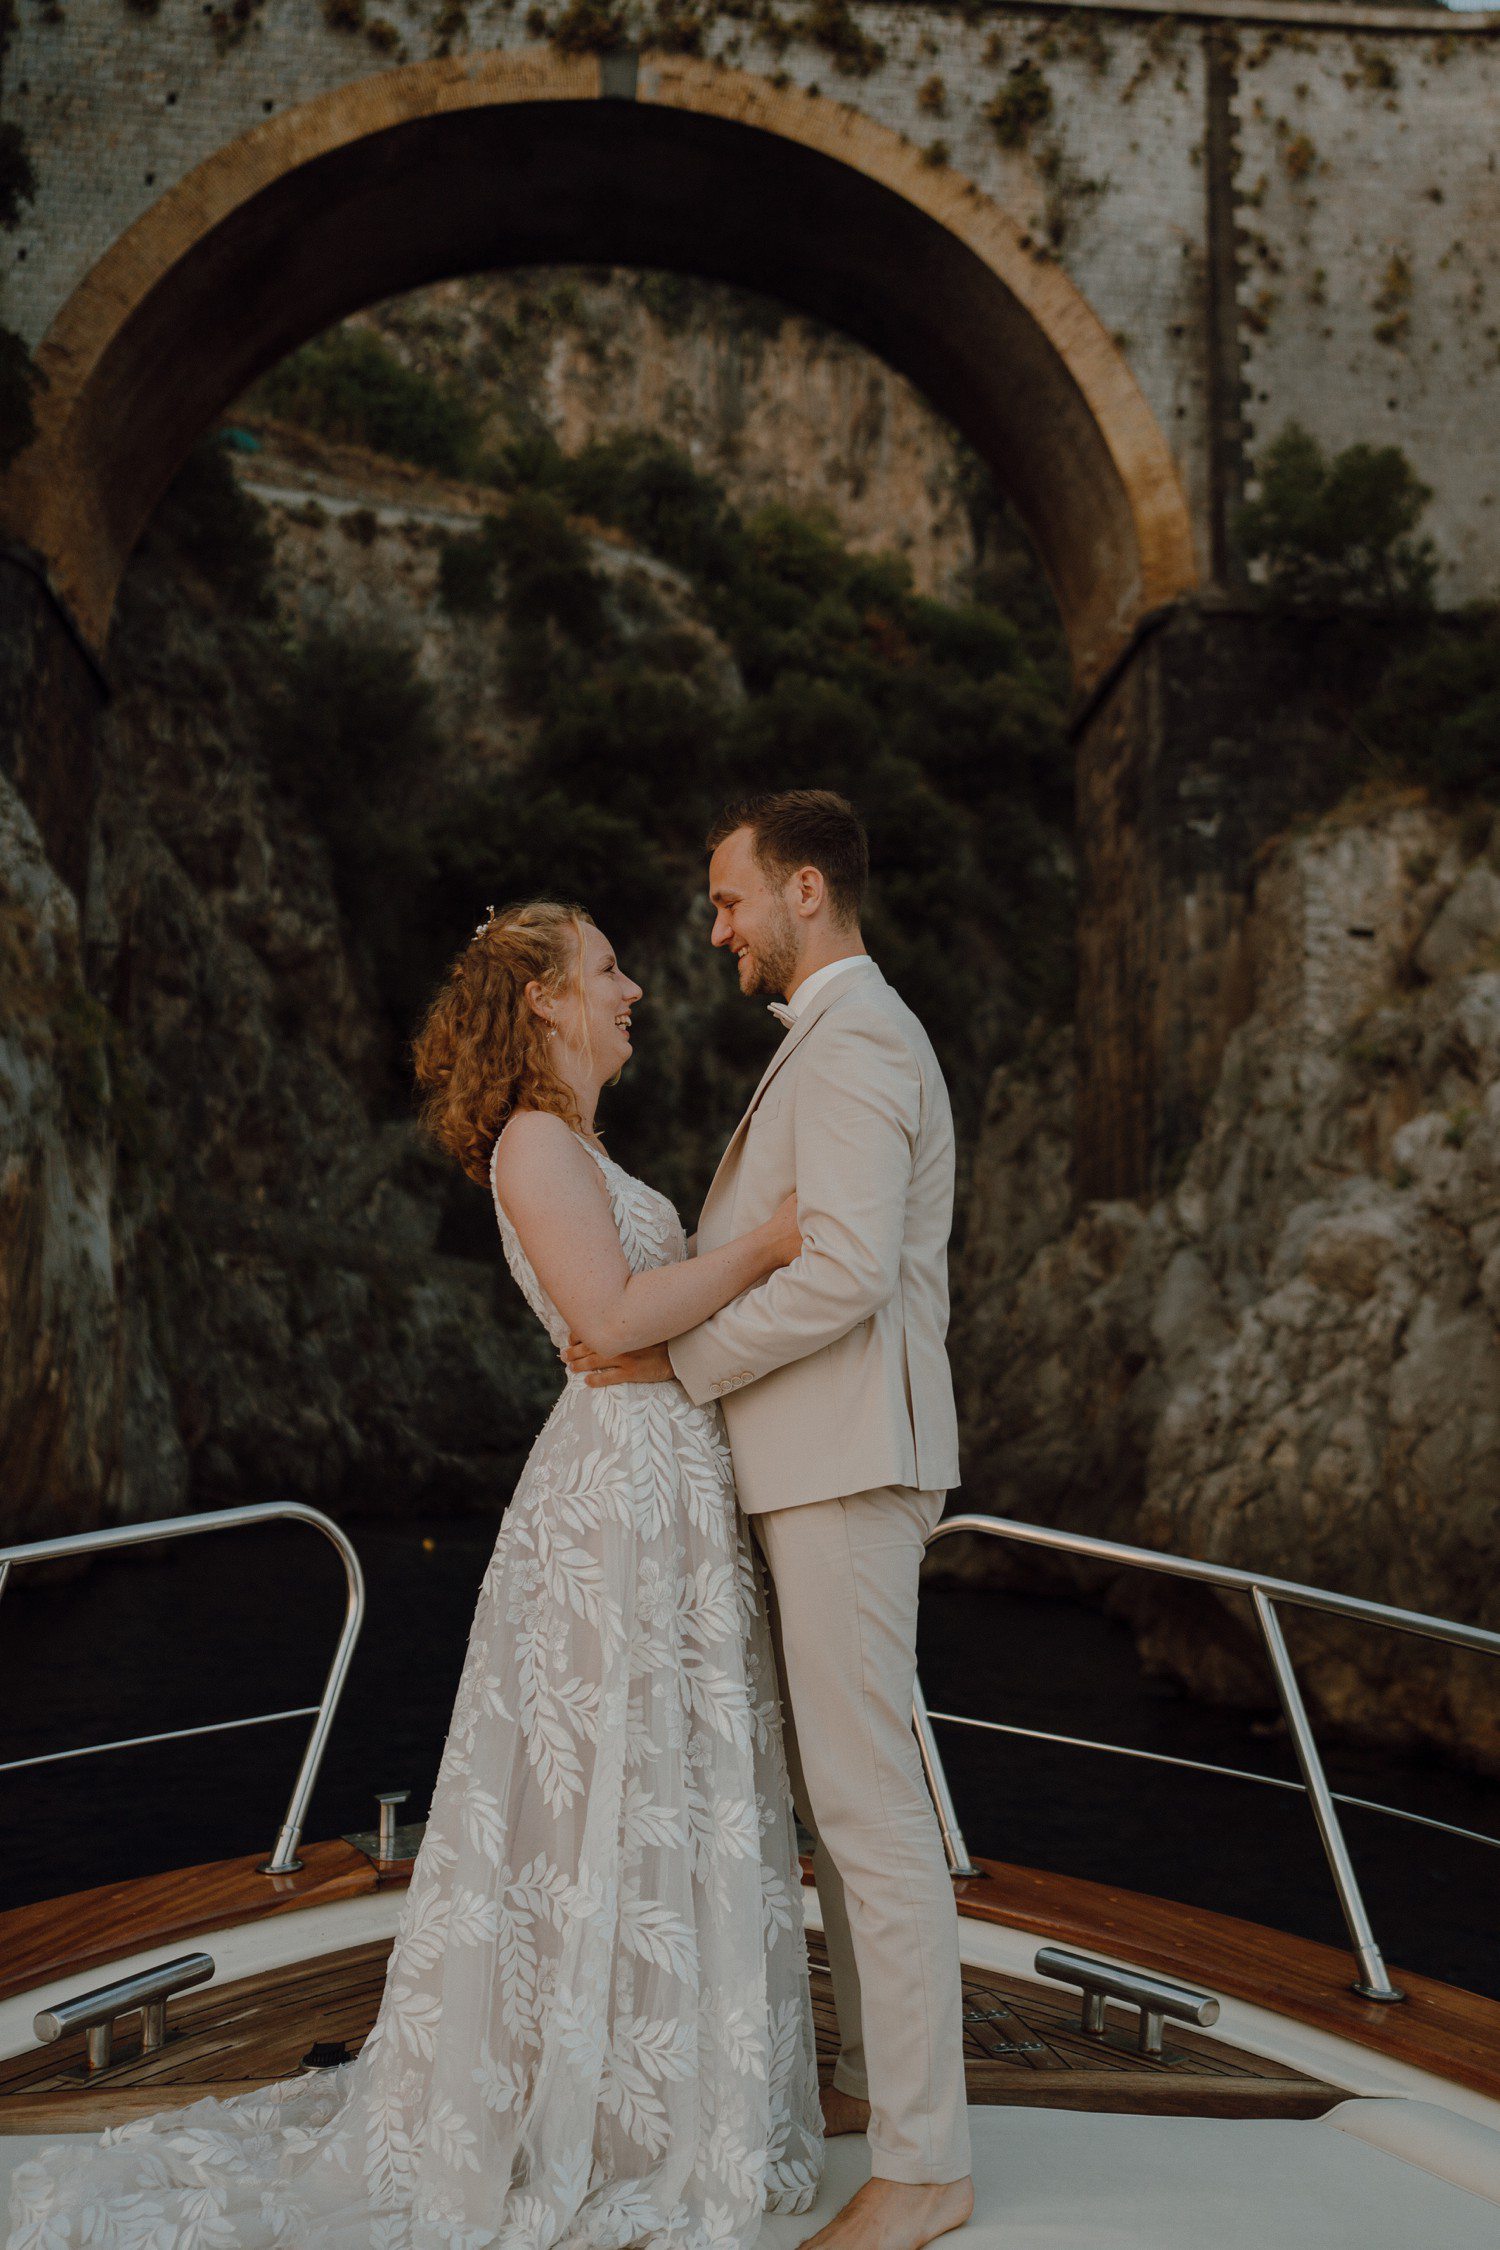 Boat wedding photos in Positano Italy. 